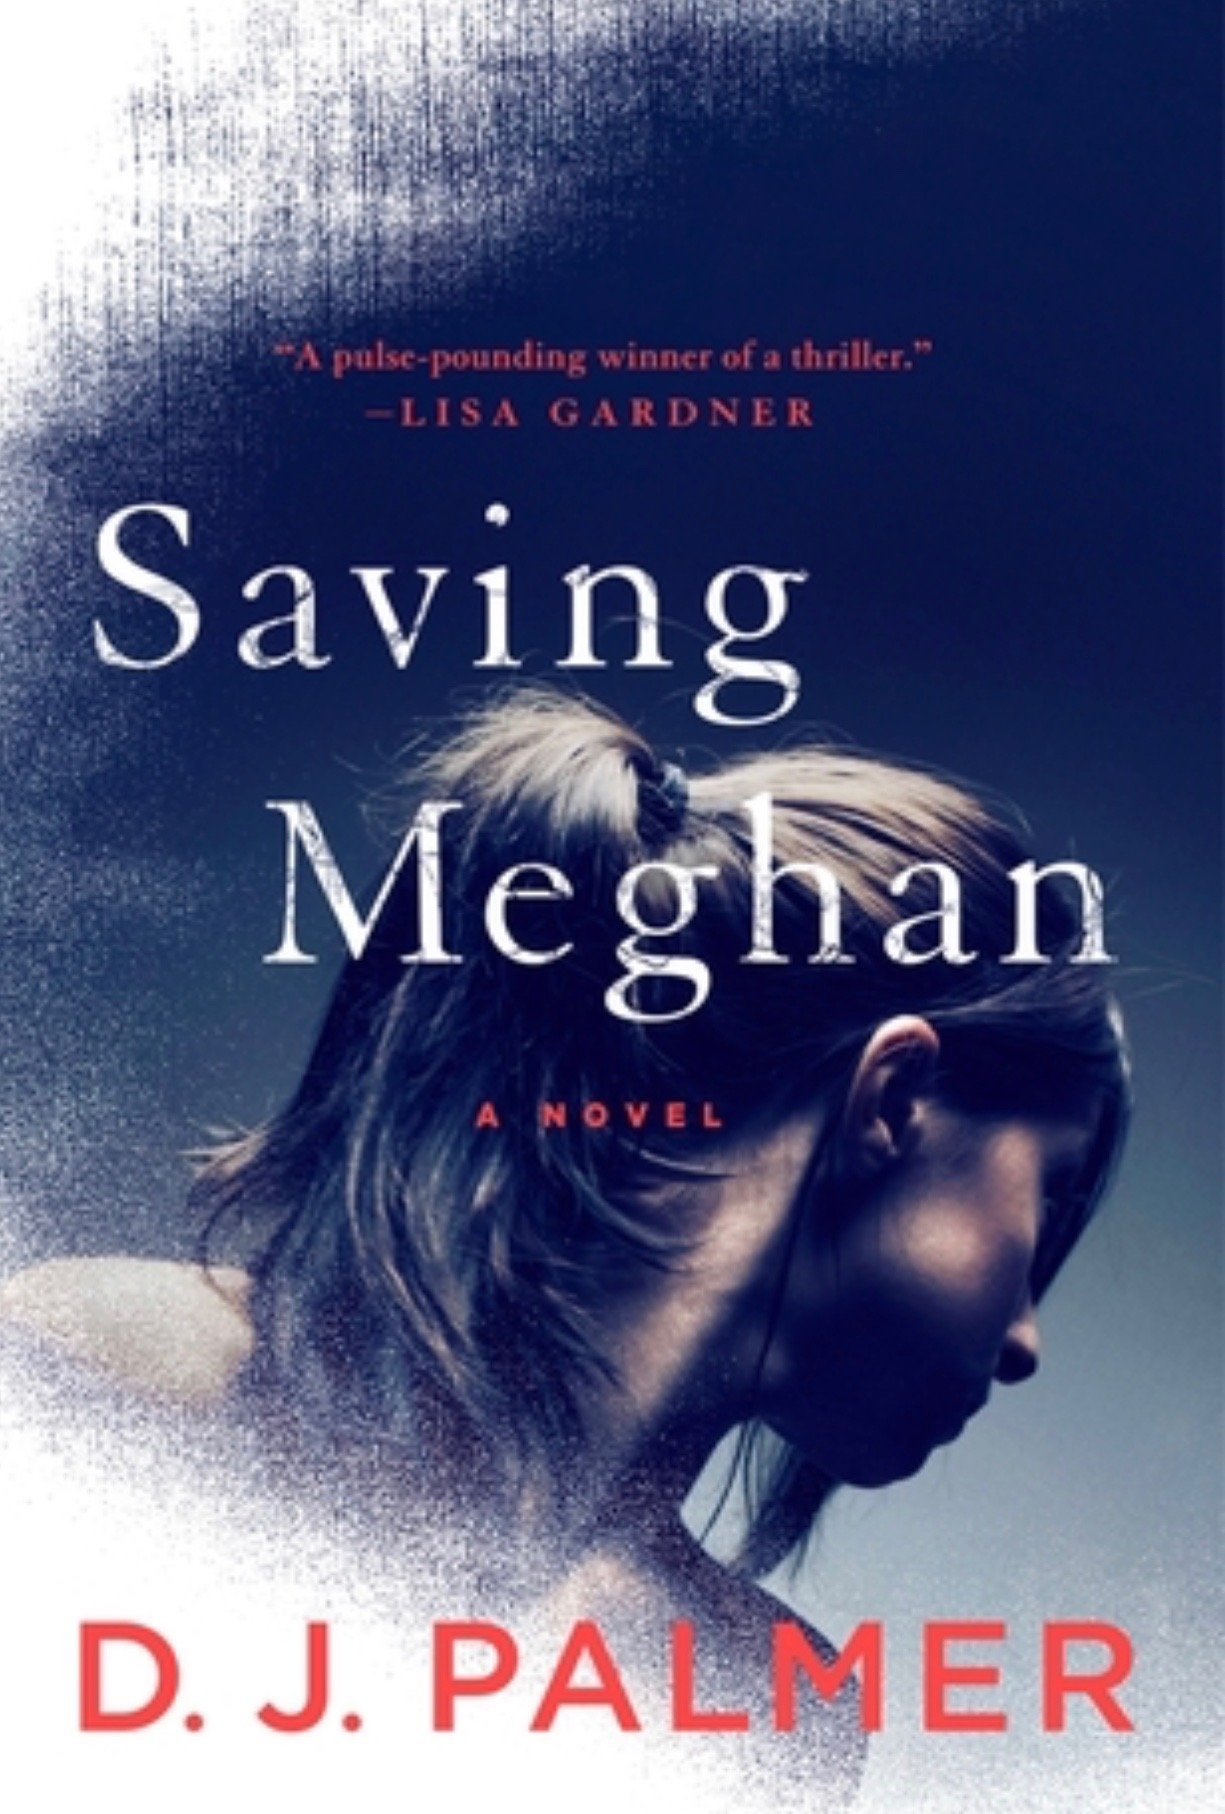 Review: Saving Meghan by D.J. Palmer